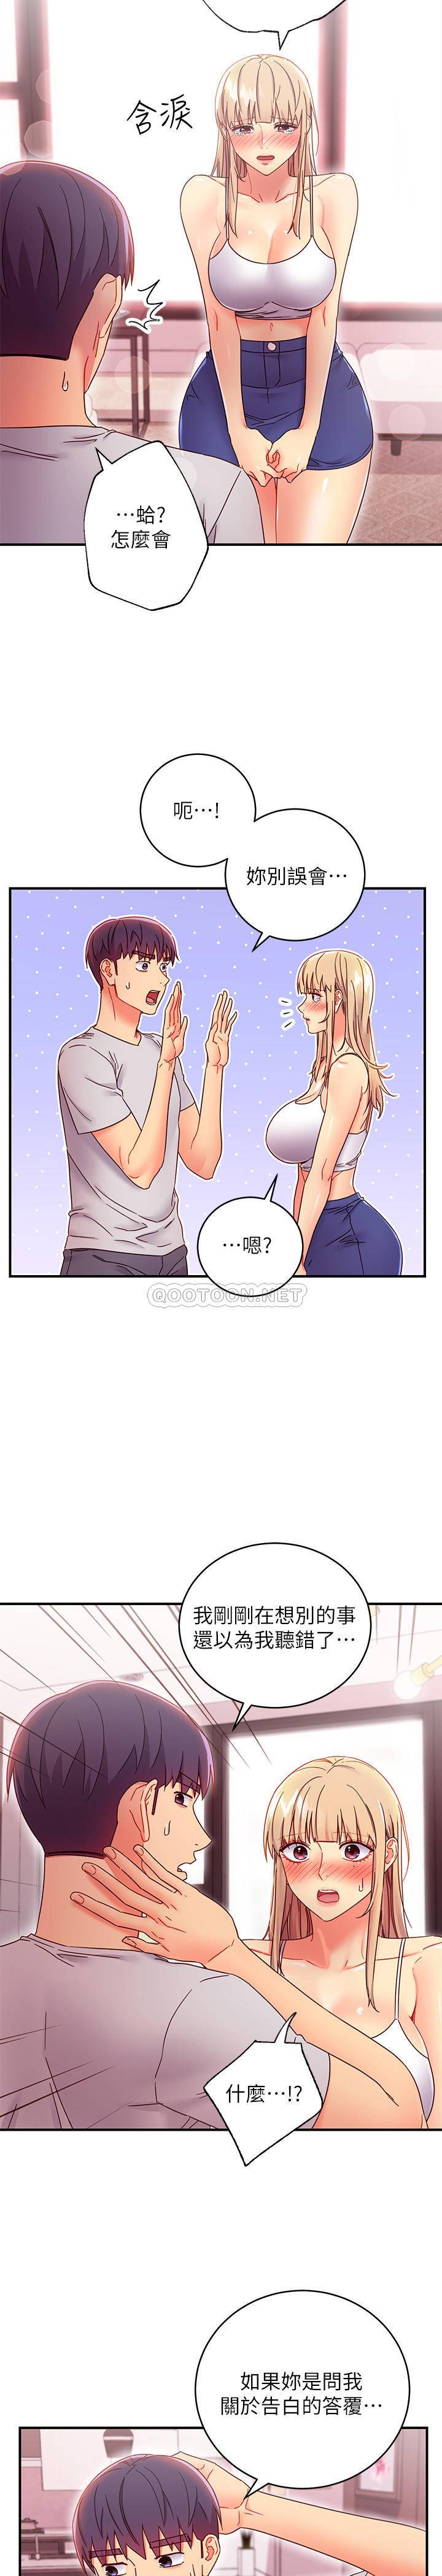 韩国污漫画 繼母的朋友們 继母的朋友们-第67话-娜琏对硕宇的羞涩情意 24